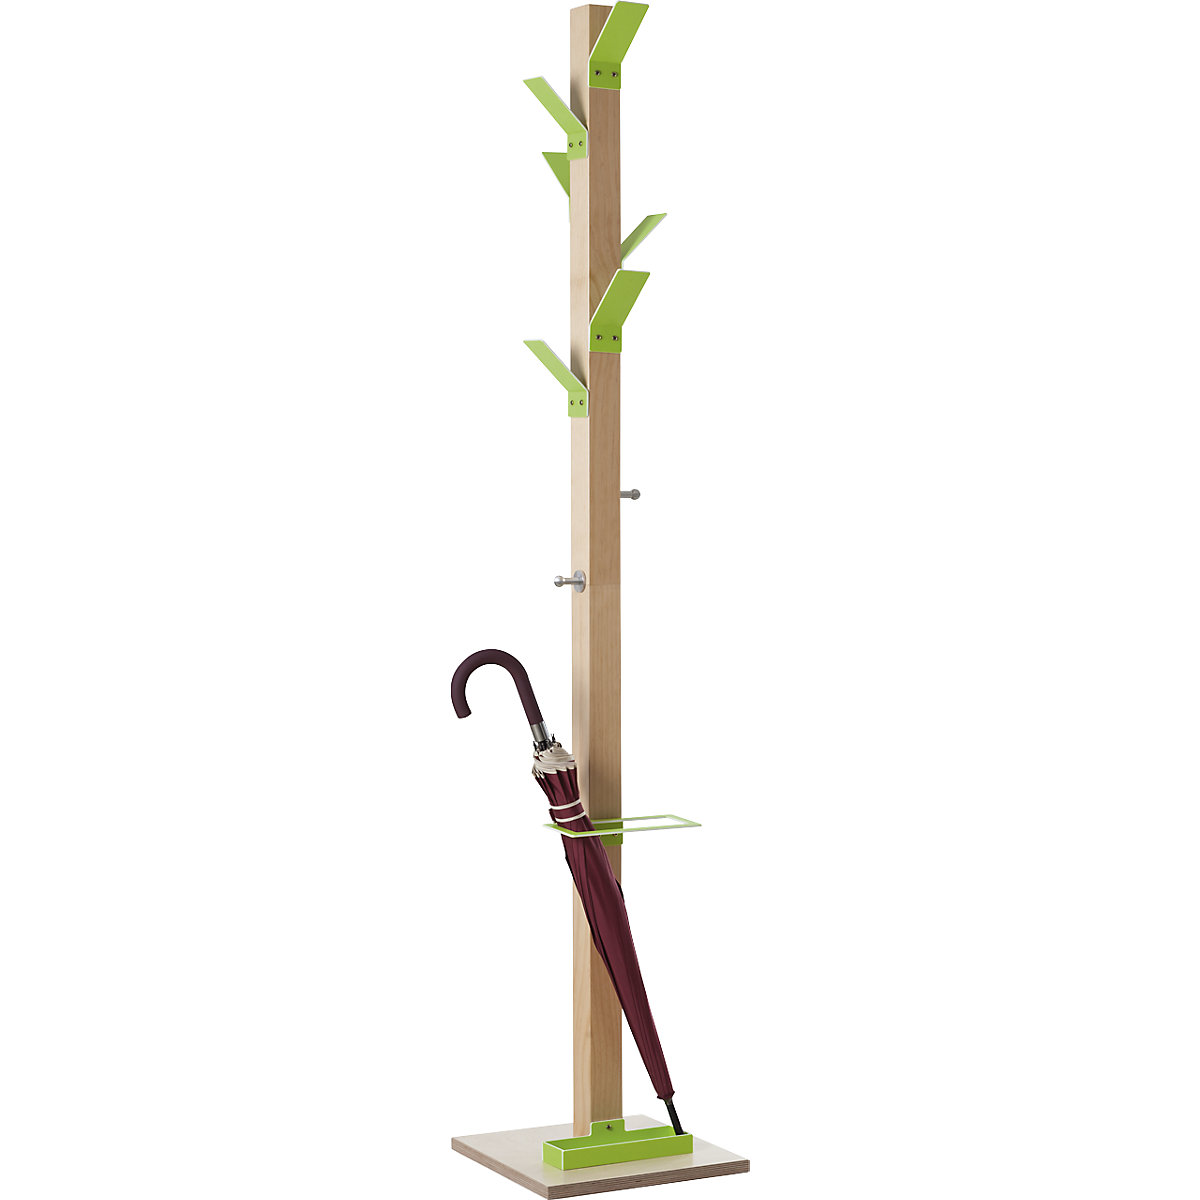 Vešiakový stojan, masívne drevo, s držiakom na dáždniky a odkvapkávacou miskou, zelená koruna-5